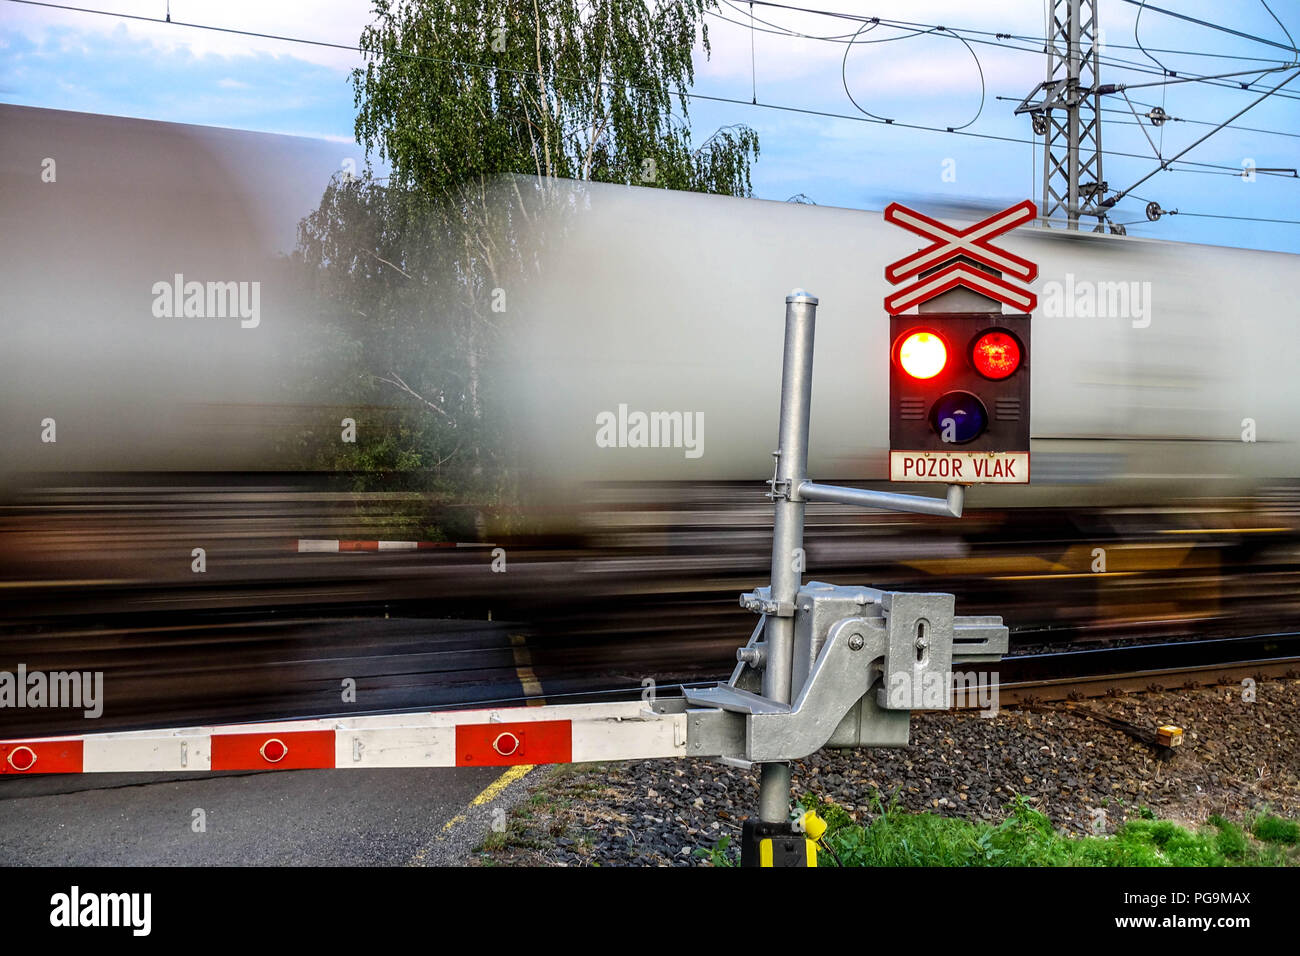 Ceske drahy, ferrovie ceche, treno merci passando un attraversamento ferroviario con rosso semaforo lampeggiante, Repubblica Ceca treno, Europa Foto Stock